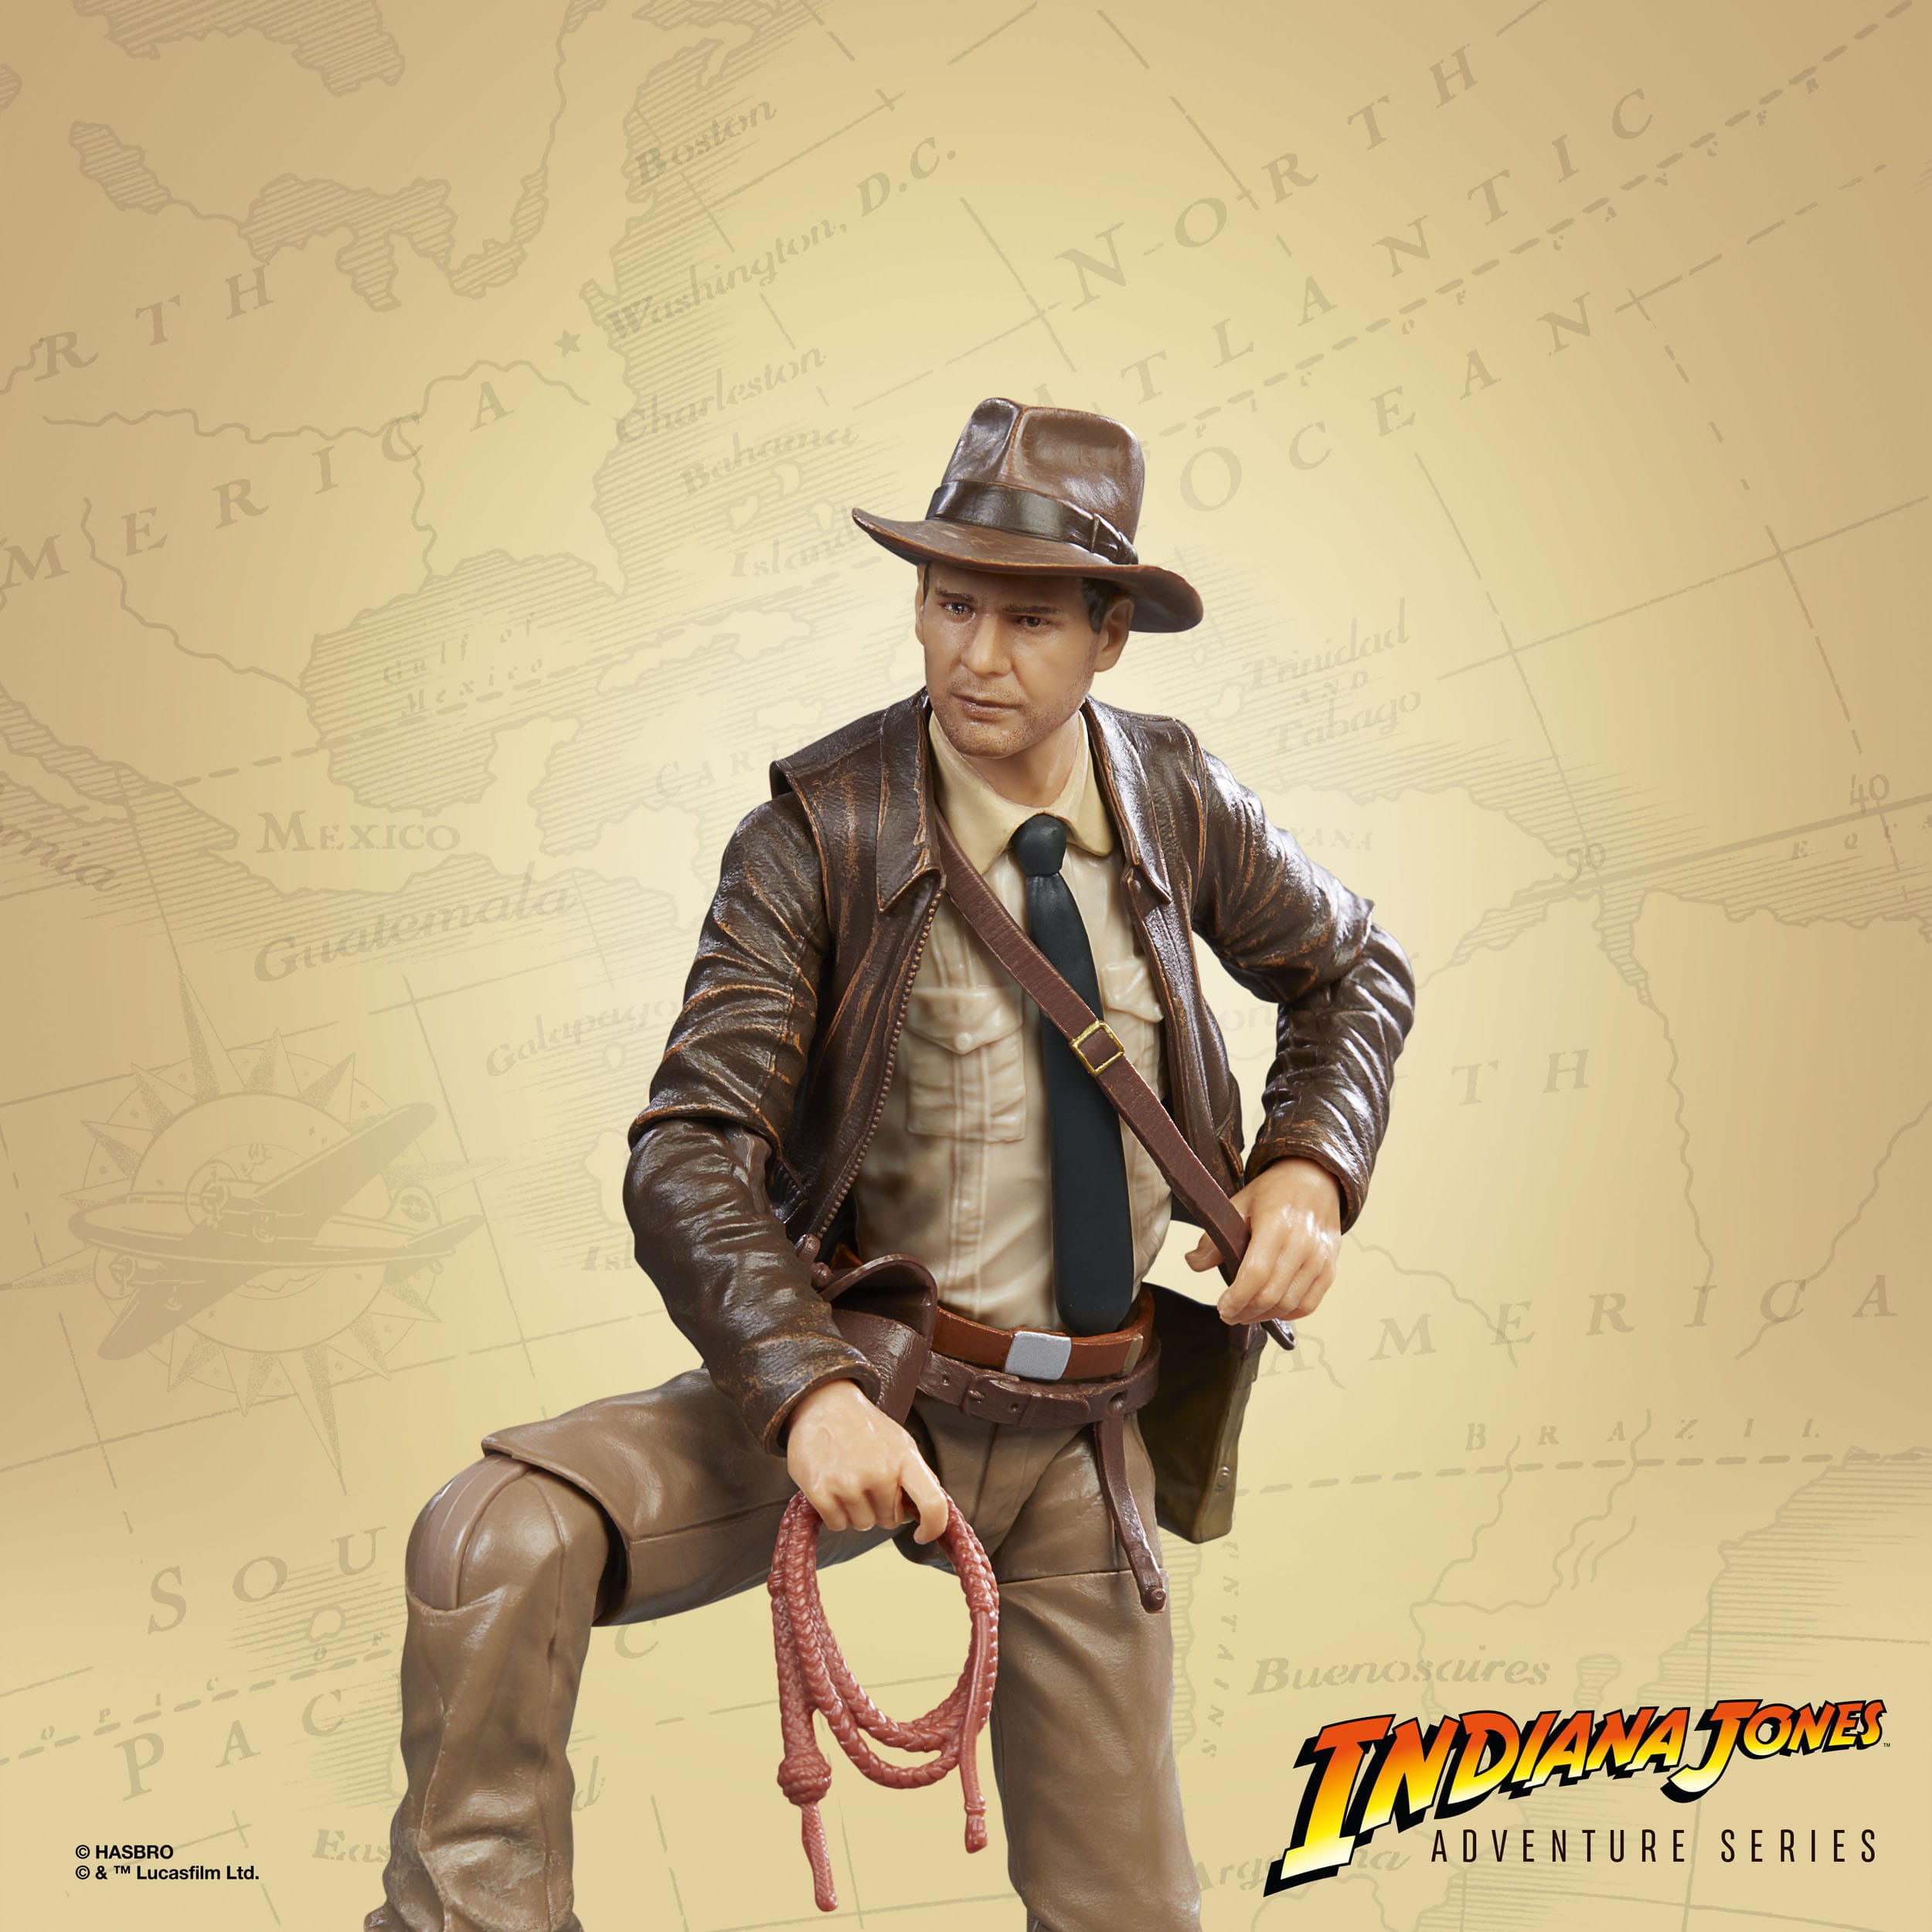  Indiana Jones Adventure Series Actionfigur Indiana Jones (Der letzte Kreuzzug) 15 cm F60705X0 5010994167981